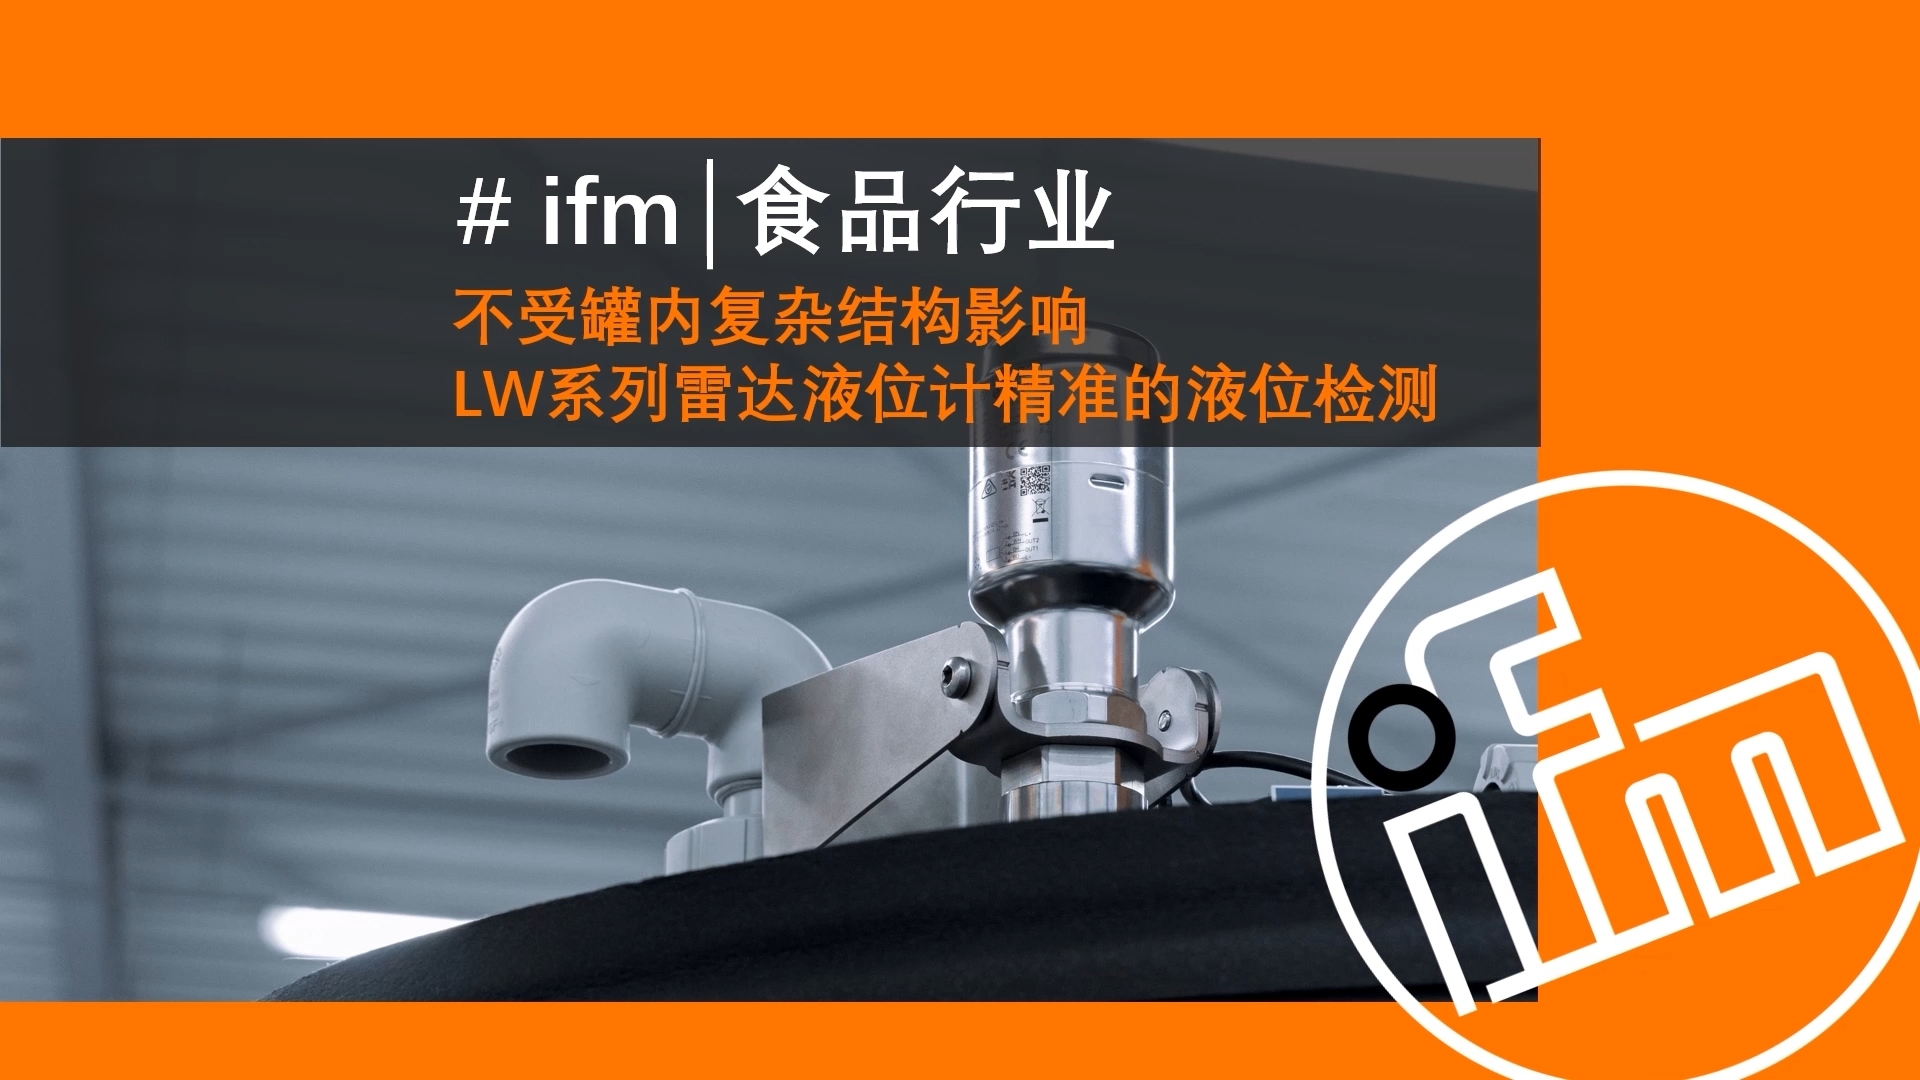 ifm IO-Link主站与LW2720雷达液位传感器提供高精度、稳定、易维护的解决方案，满足食品安全